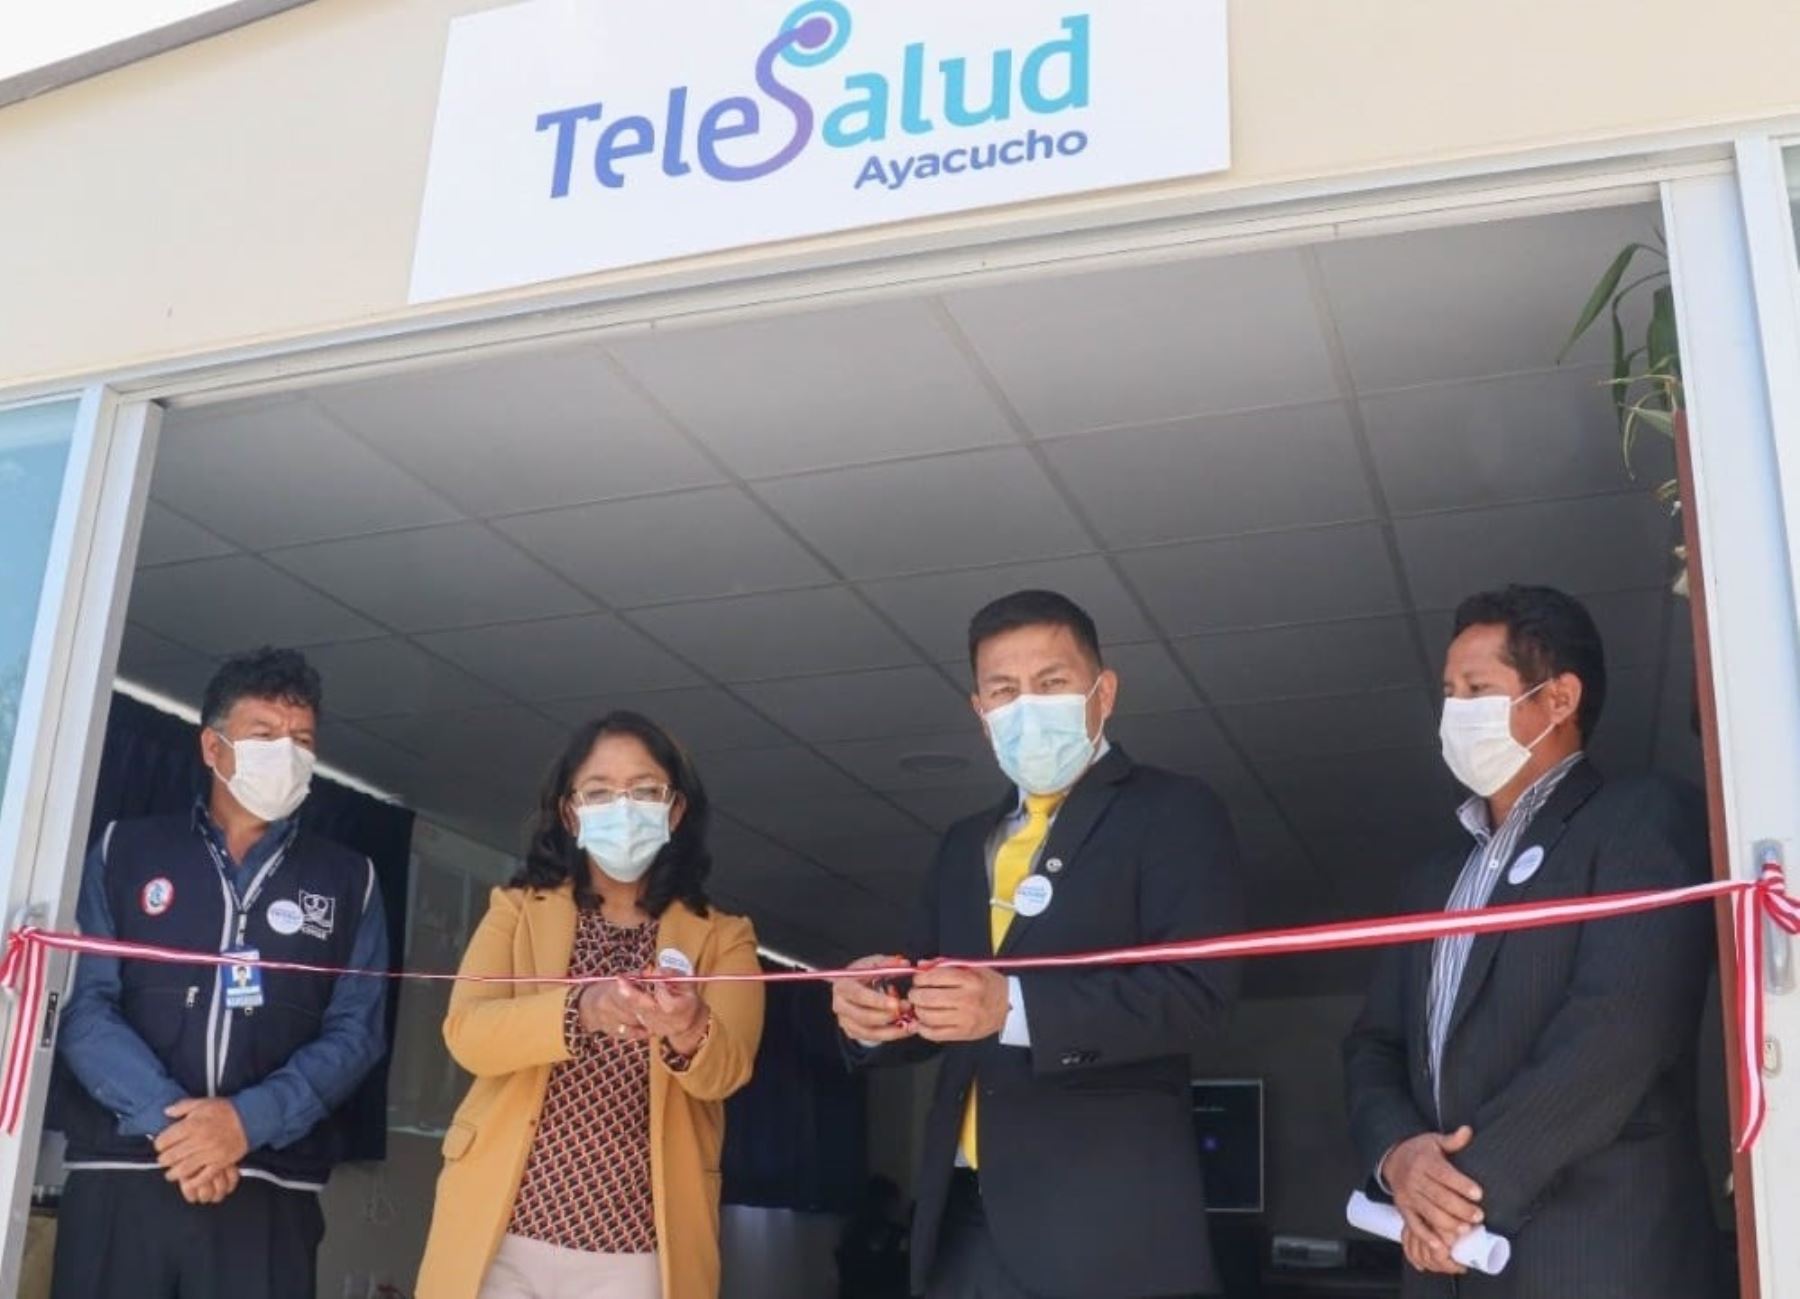 La Diresa Ayacucho inaugura unidad de telesalud para brindar una mejor atención médica a la población local. ANDINA/Difusión